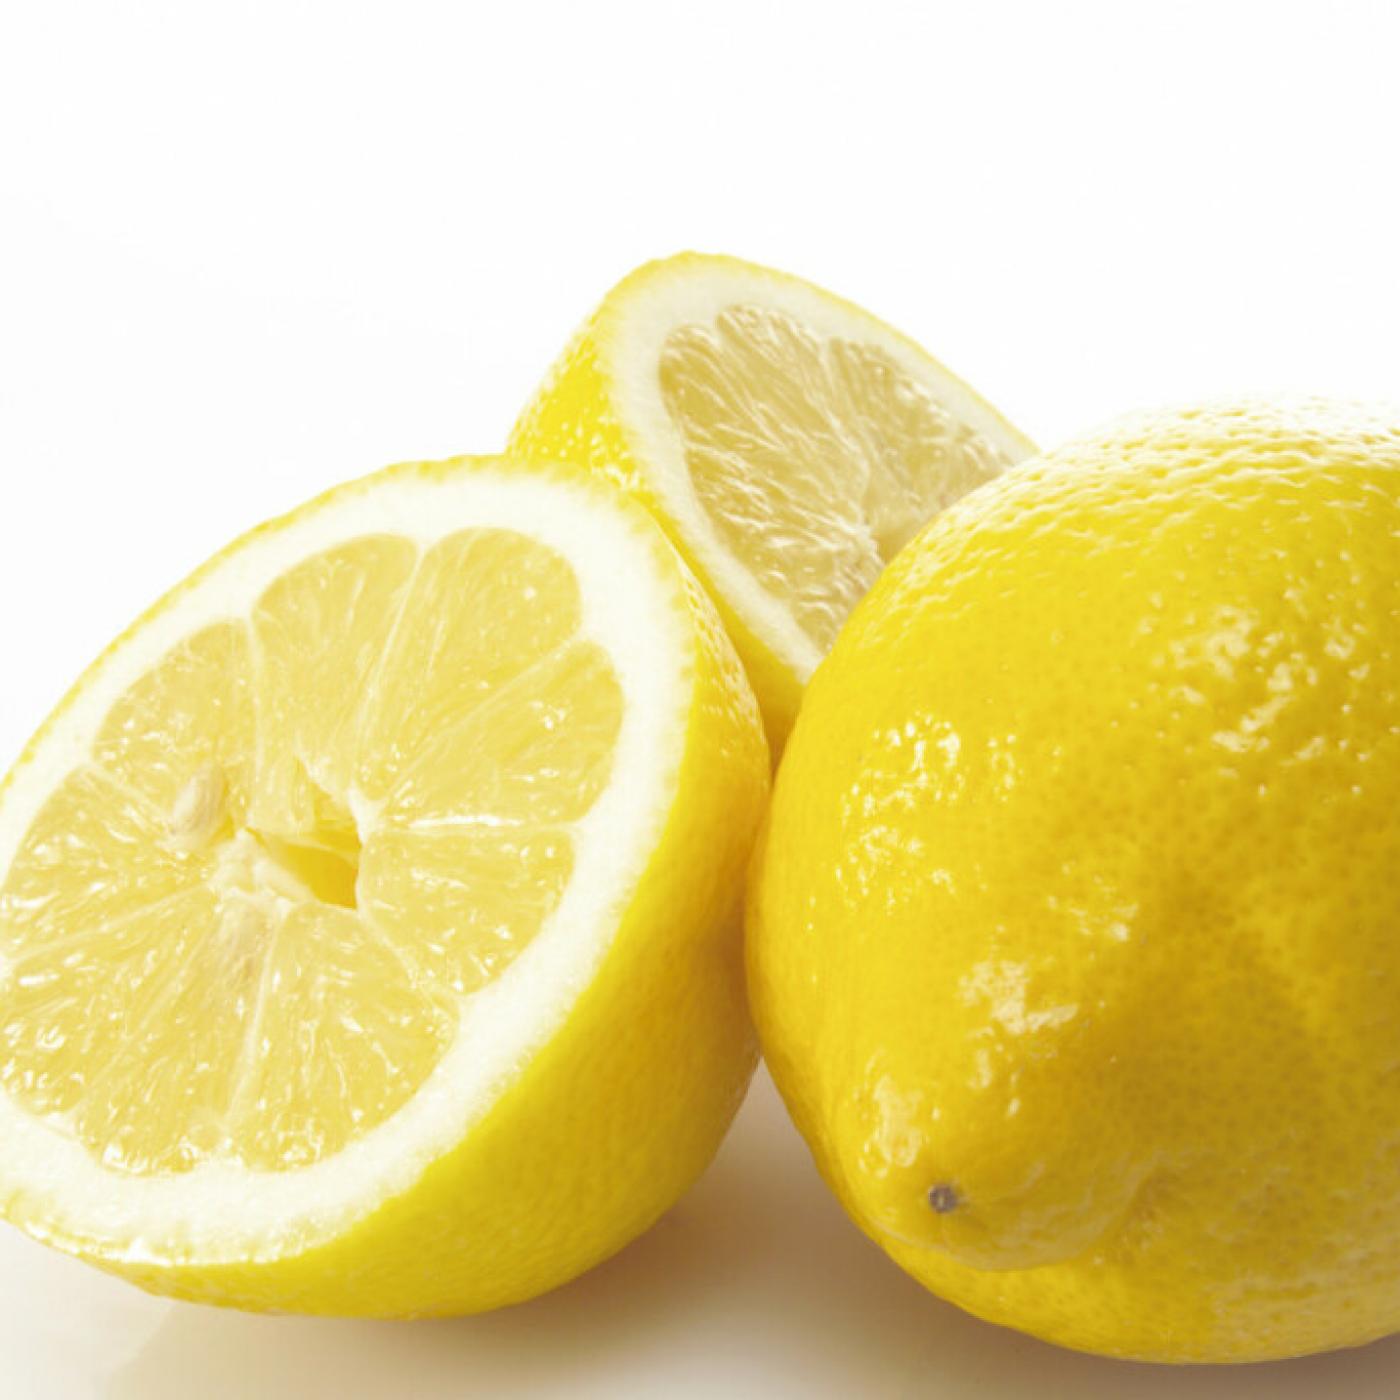 Le Journal des Bonnes Nouvelles : Le citron, un remède pour mieux dormir